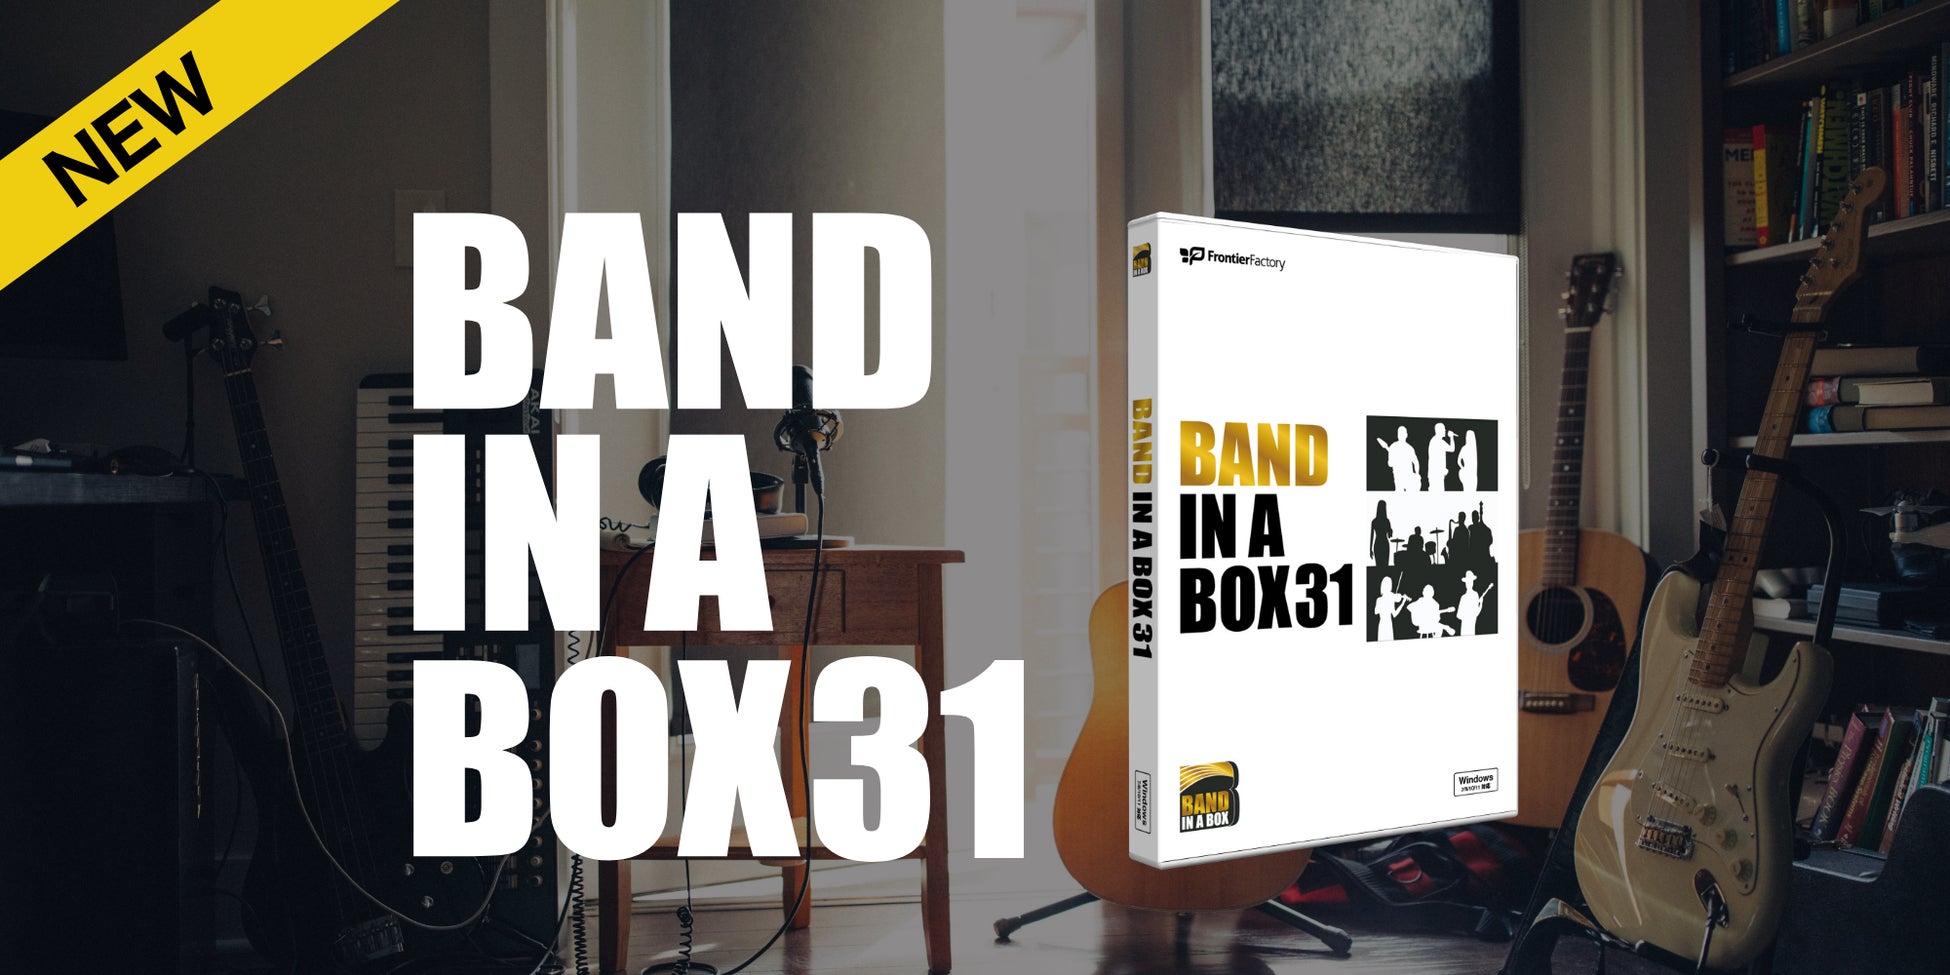 3ステップのかんたん操作で作曲可能な自動作曲ソフト『Band-in-a-Box 31 for Windows』『Band-in-a-Box 31 fo...